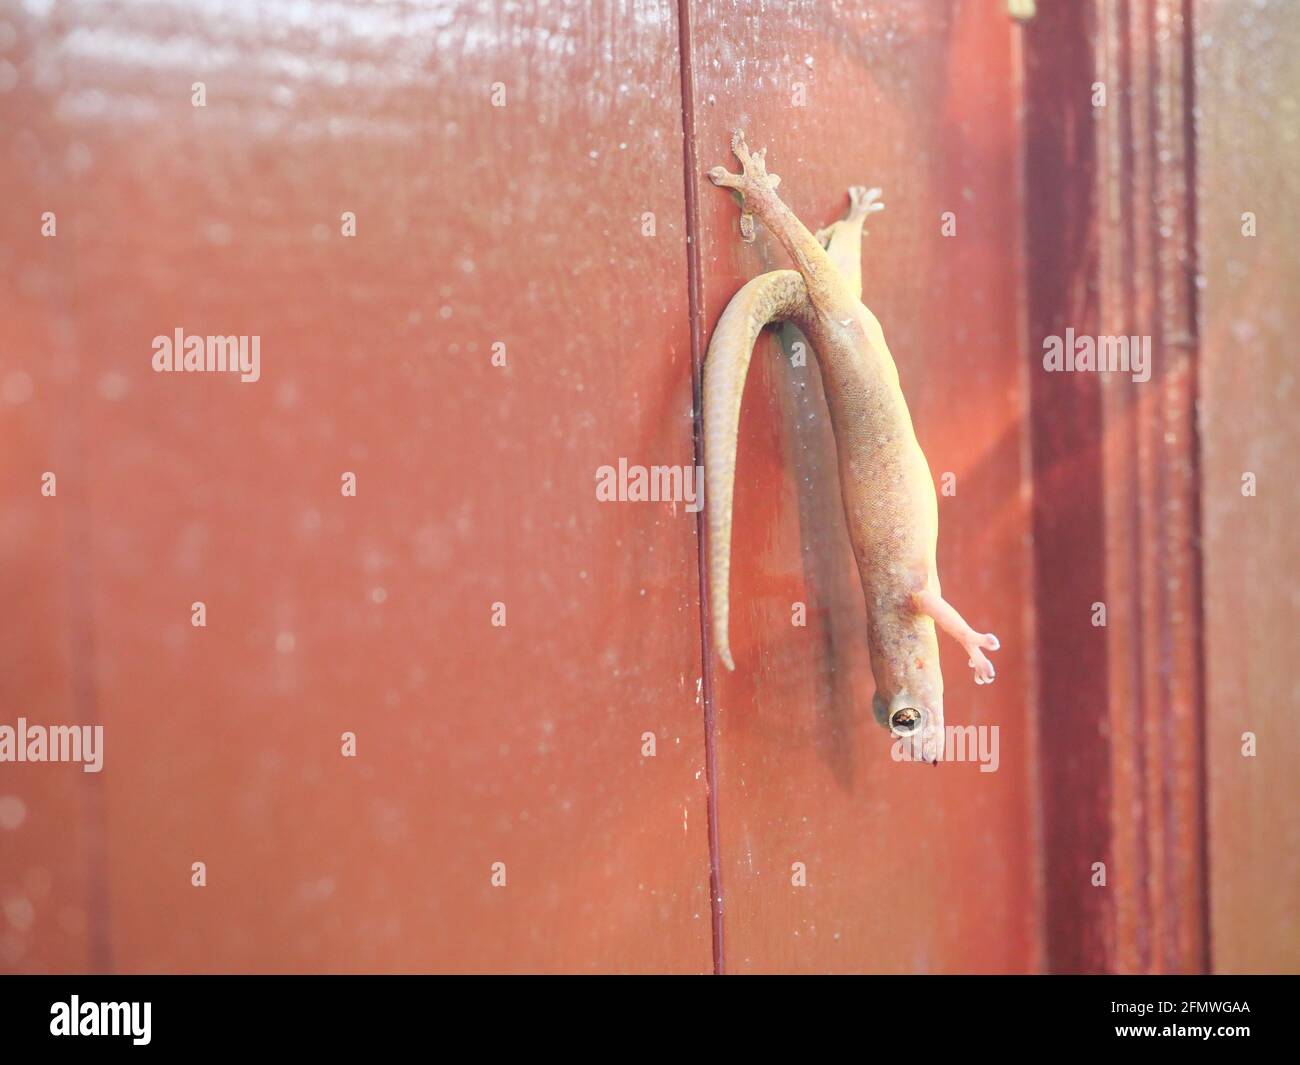 Gewöhnlicher Hausgecko ( H. platyurus ) starb, während seine Hinterfüße an der roten Wand anhängten und an der Tür Eidechsenkarkasse aufhängten Stockfoto